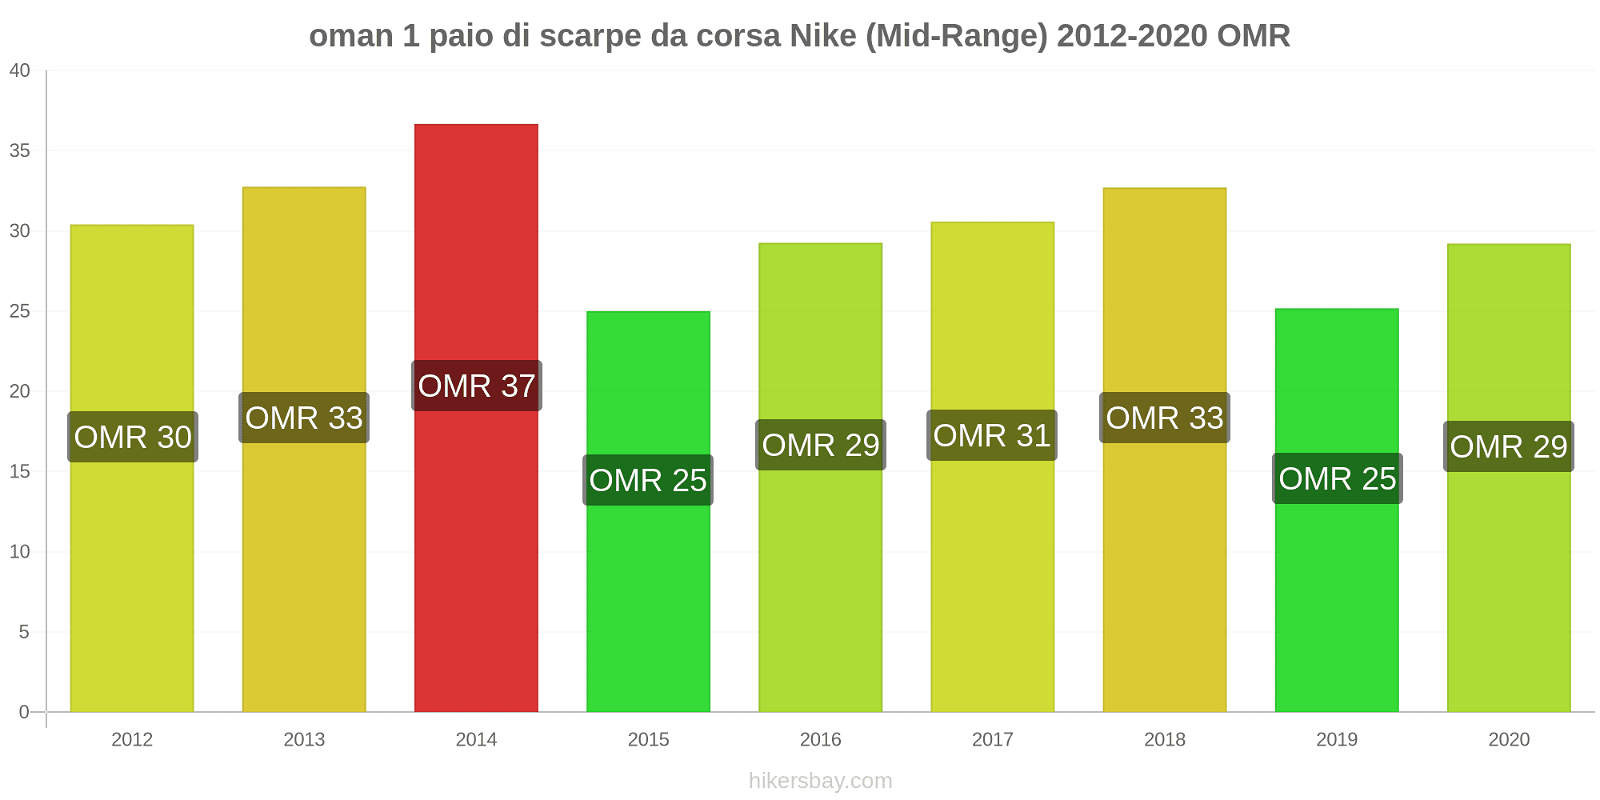 oman variazioni di prezzo 1 paio di scarpe da corsa Nike (simile) hikersbay.com